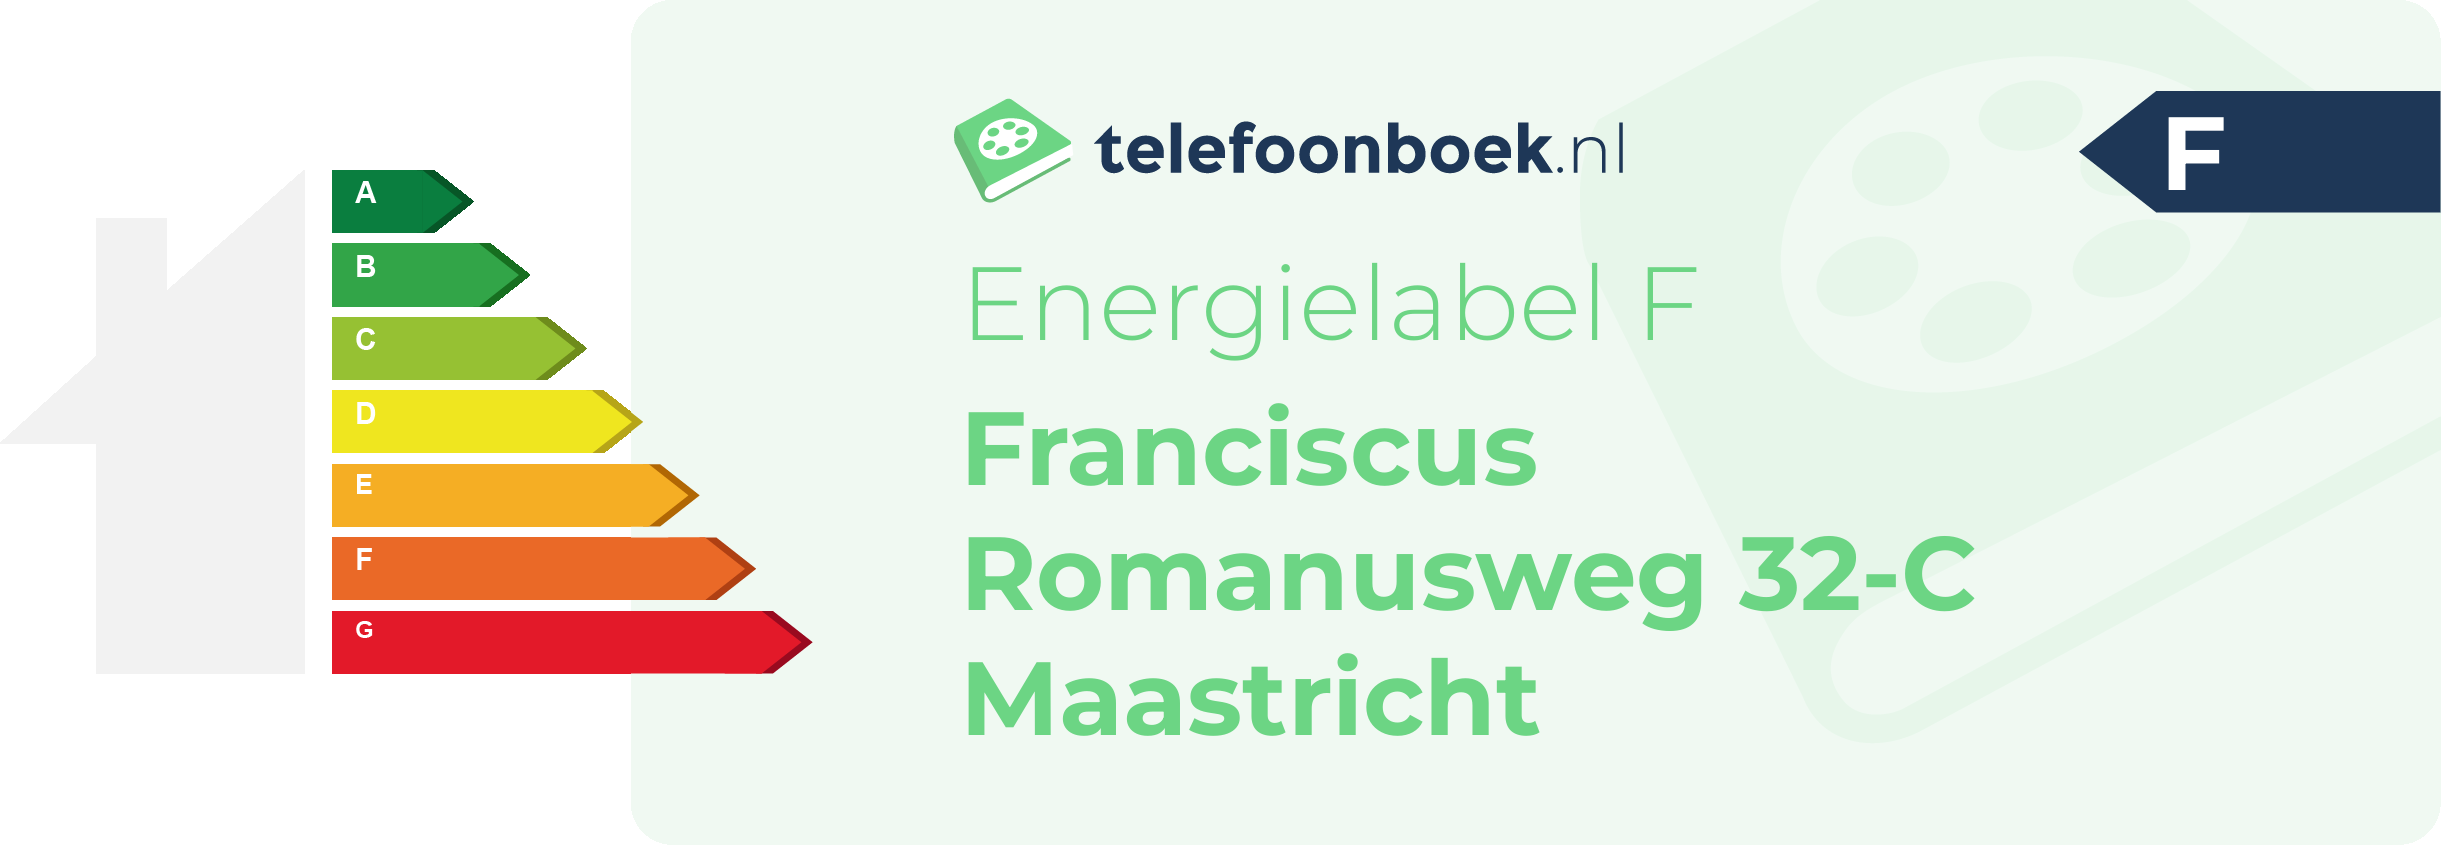 Energielabel Franciscus Romanusweg 32-C Maastricht